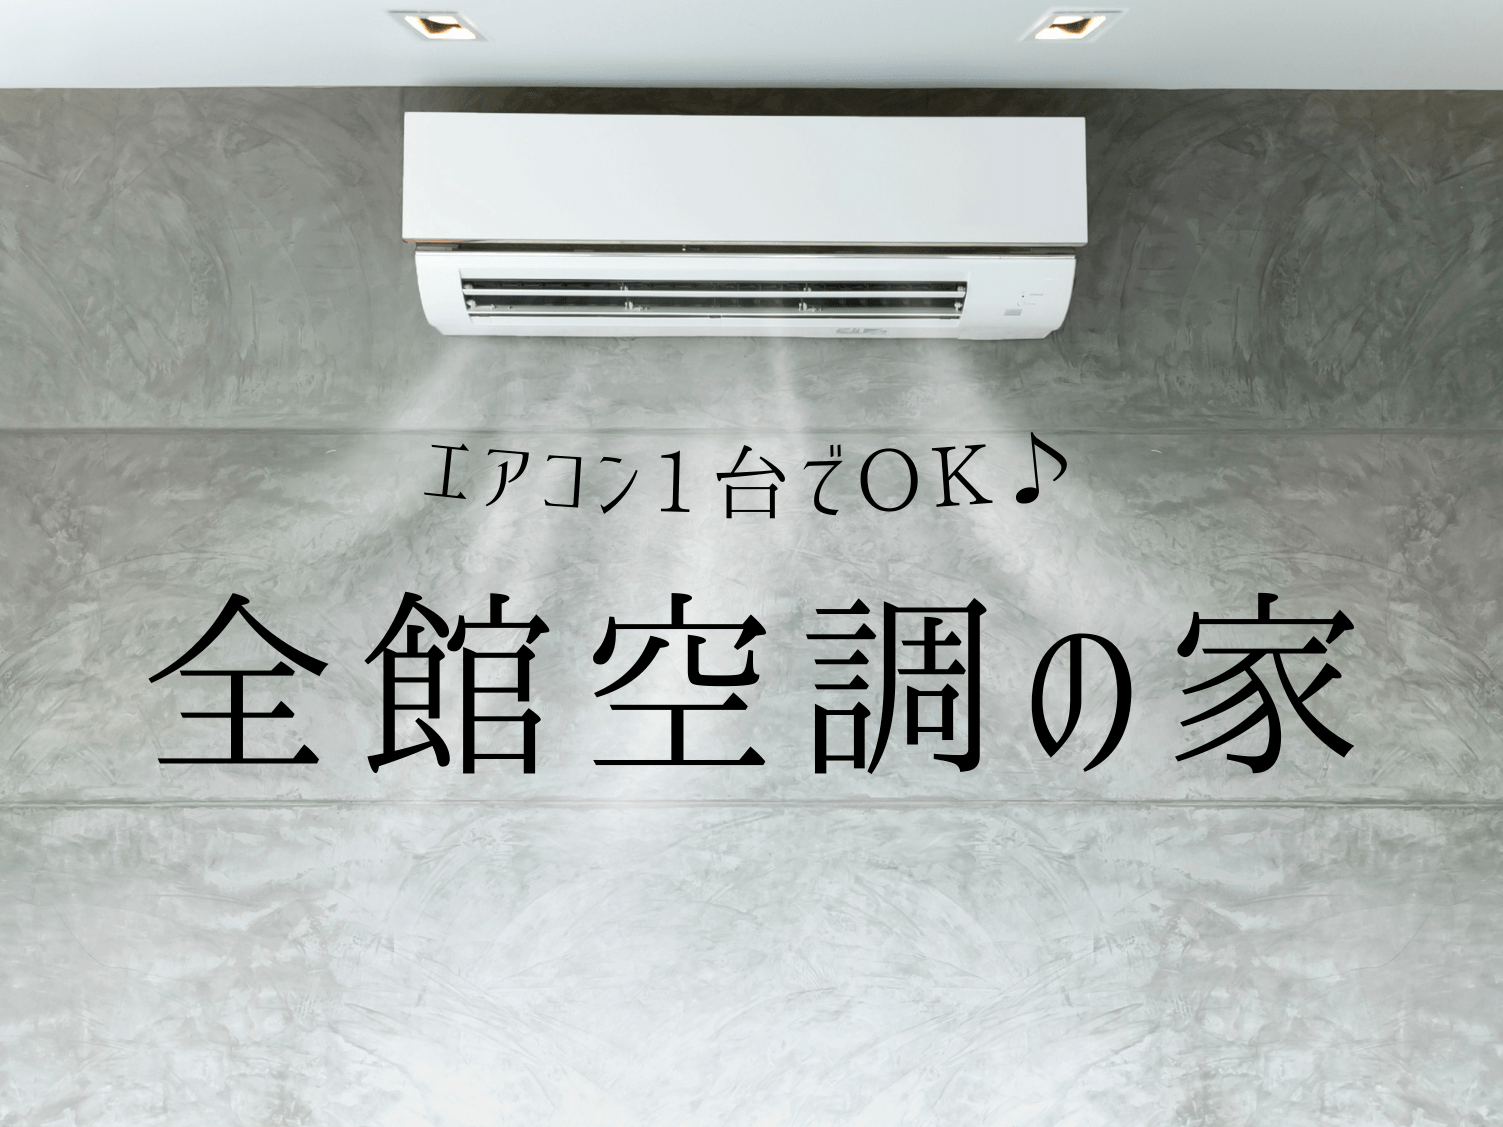 全館空調で家中の空間を快適温度に